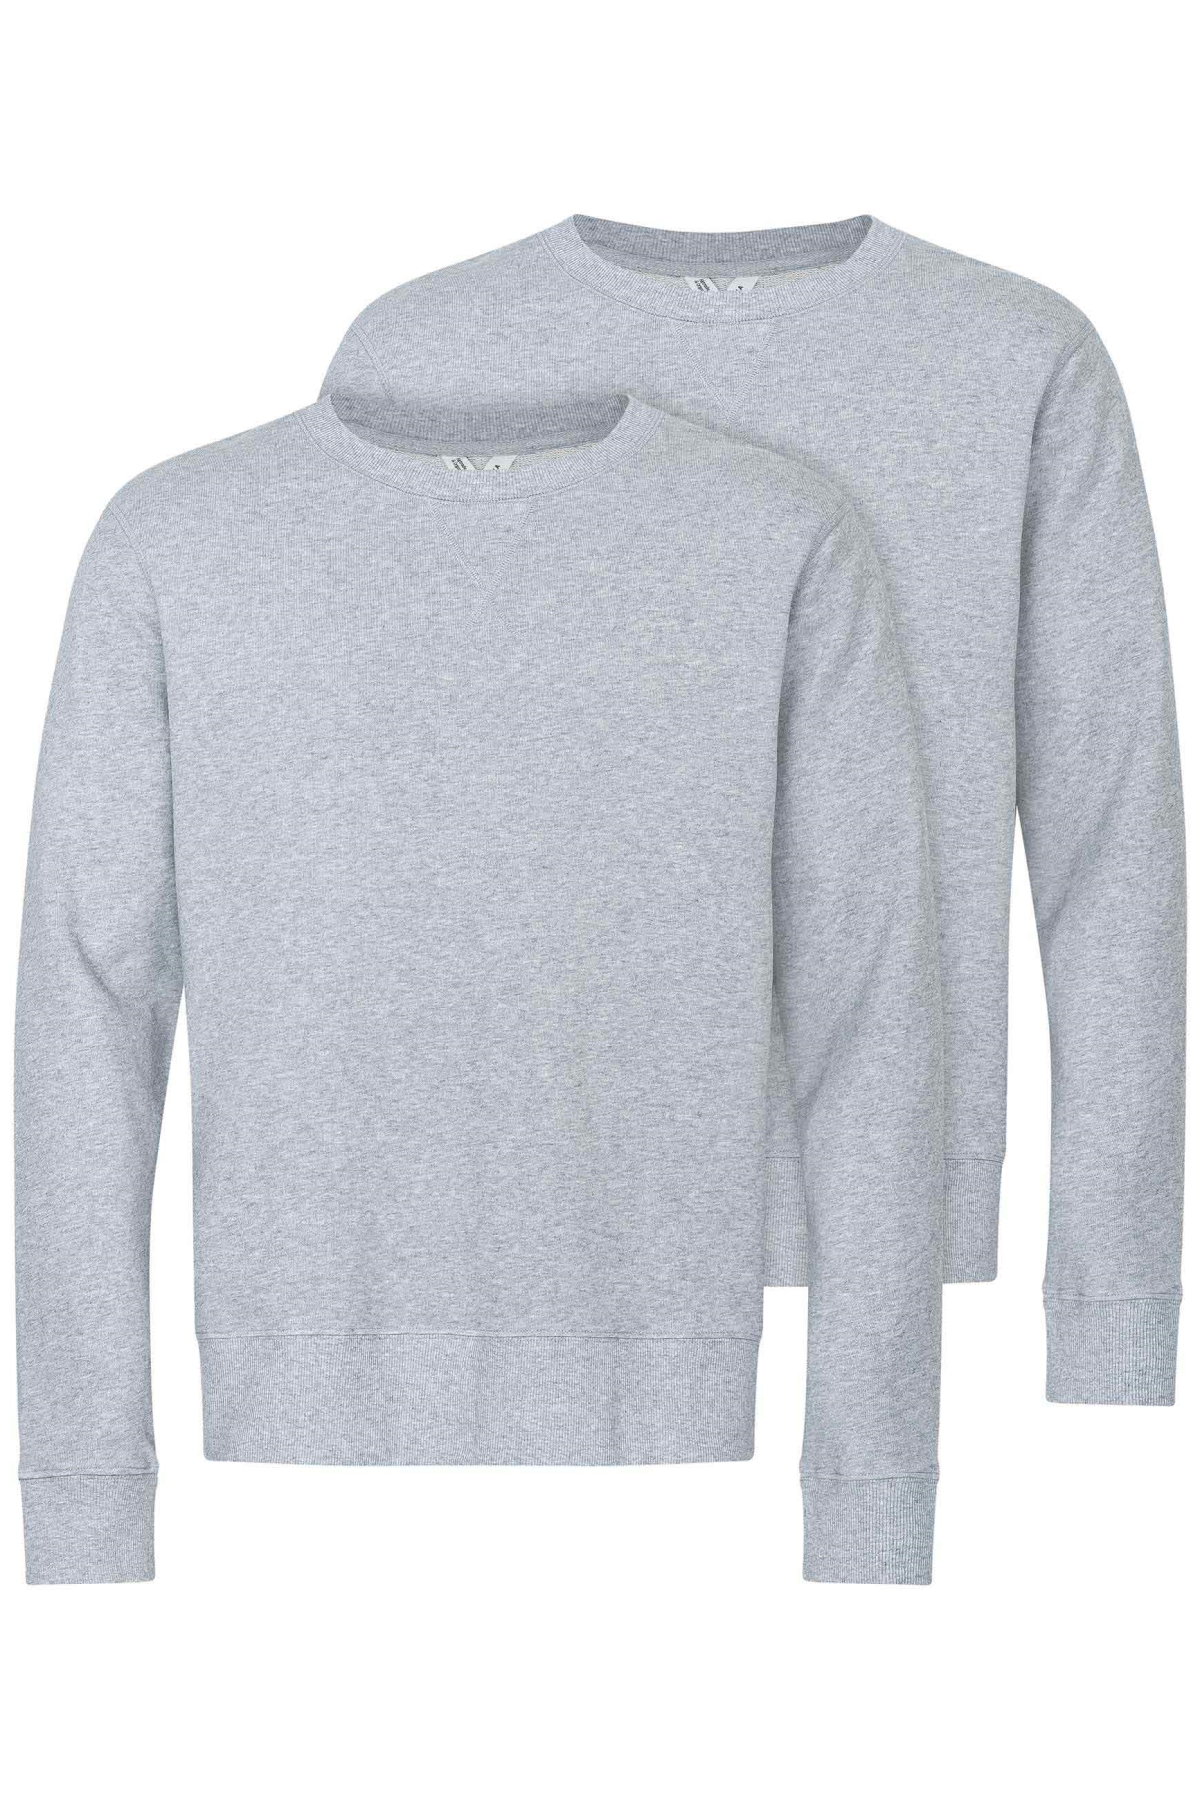 MELA Herren vegan Multipack Sweatshirt Adil Grau